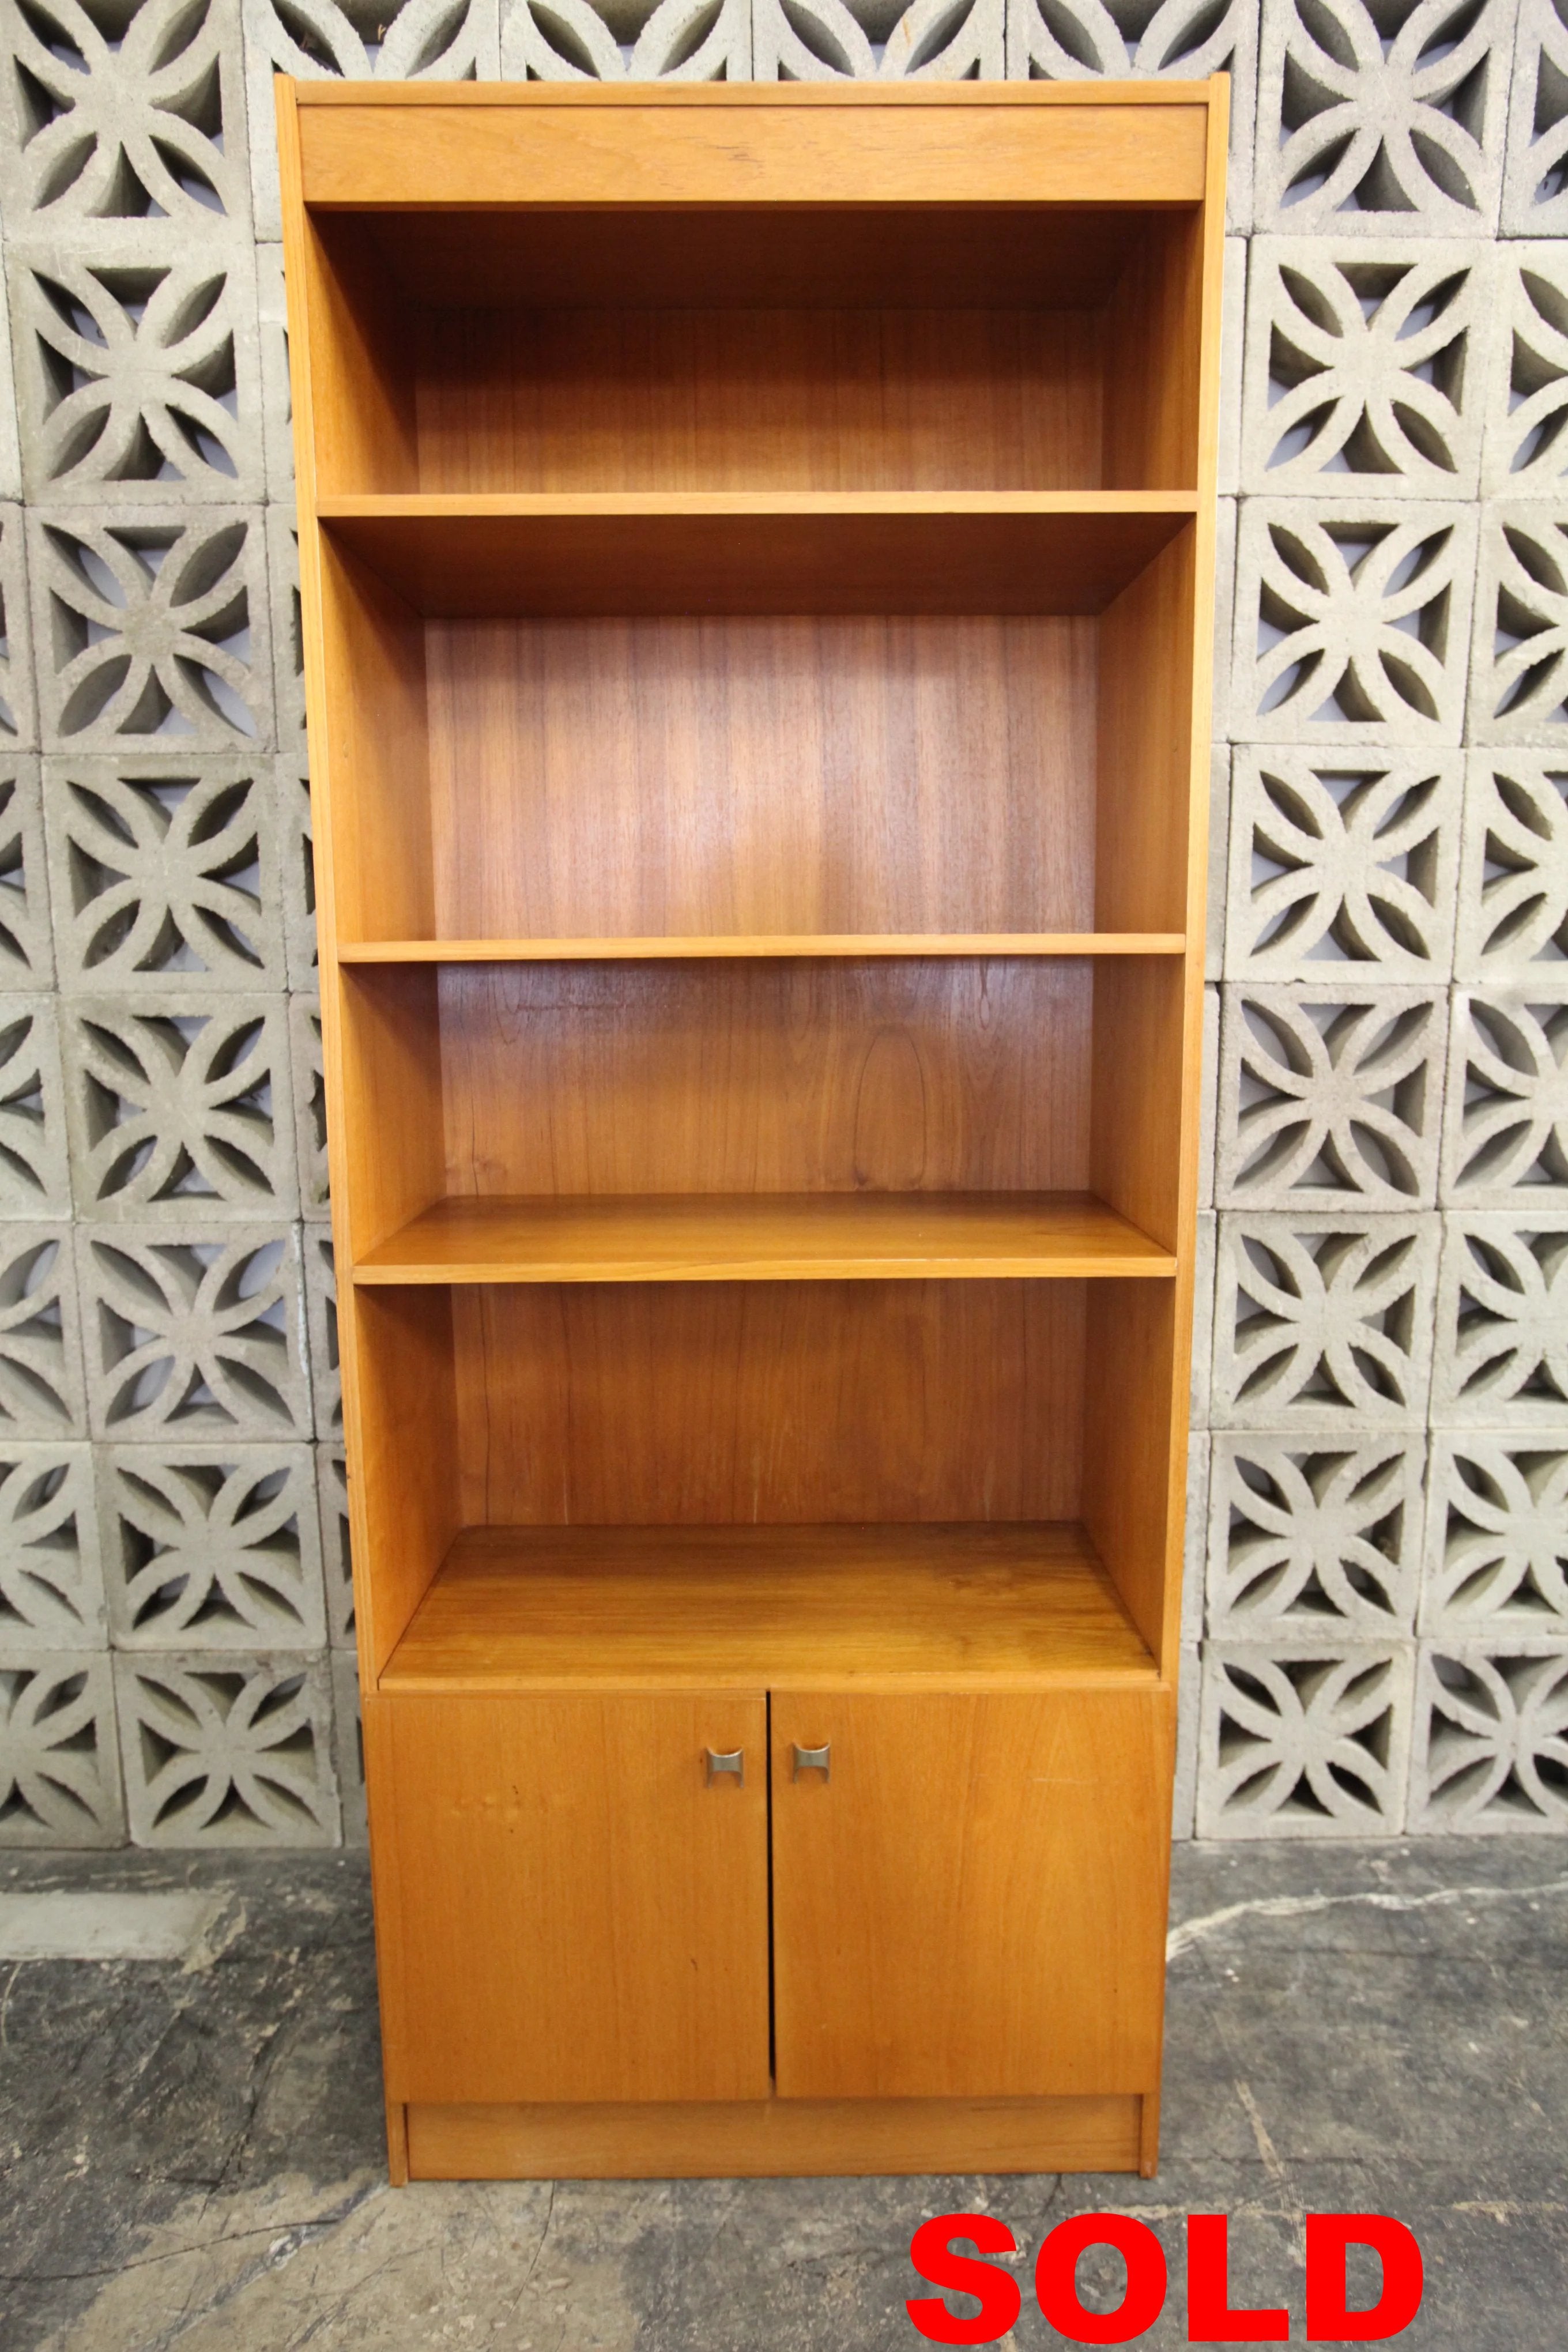 Vintage Teak Bookshelf / Wall Unit (30.5"W x 15.75"D x 76"H)